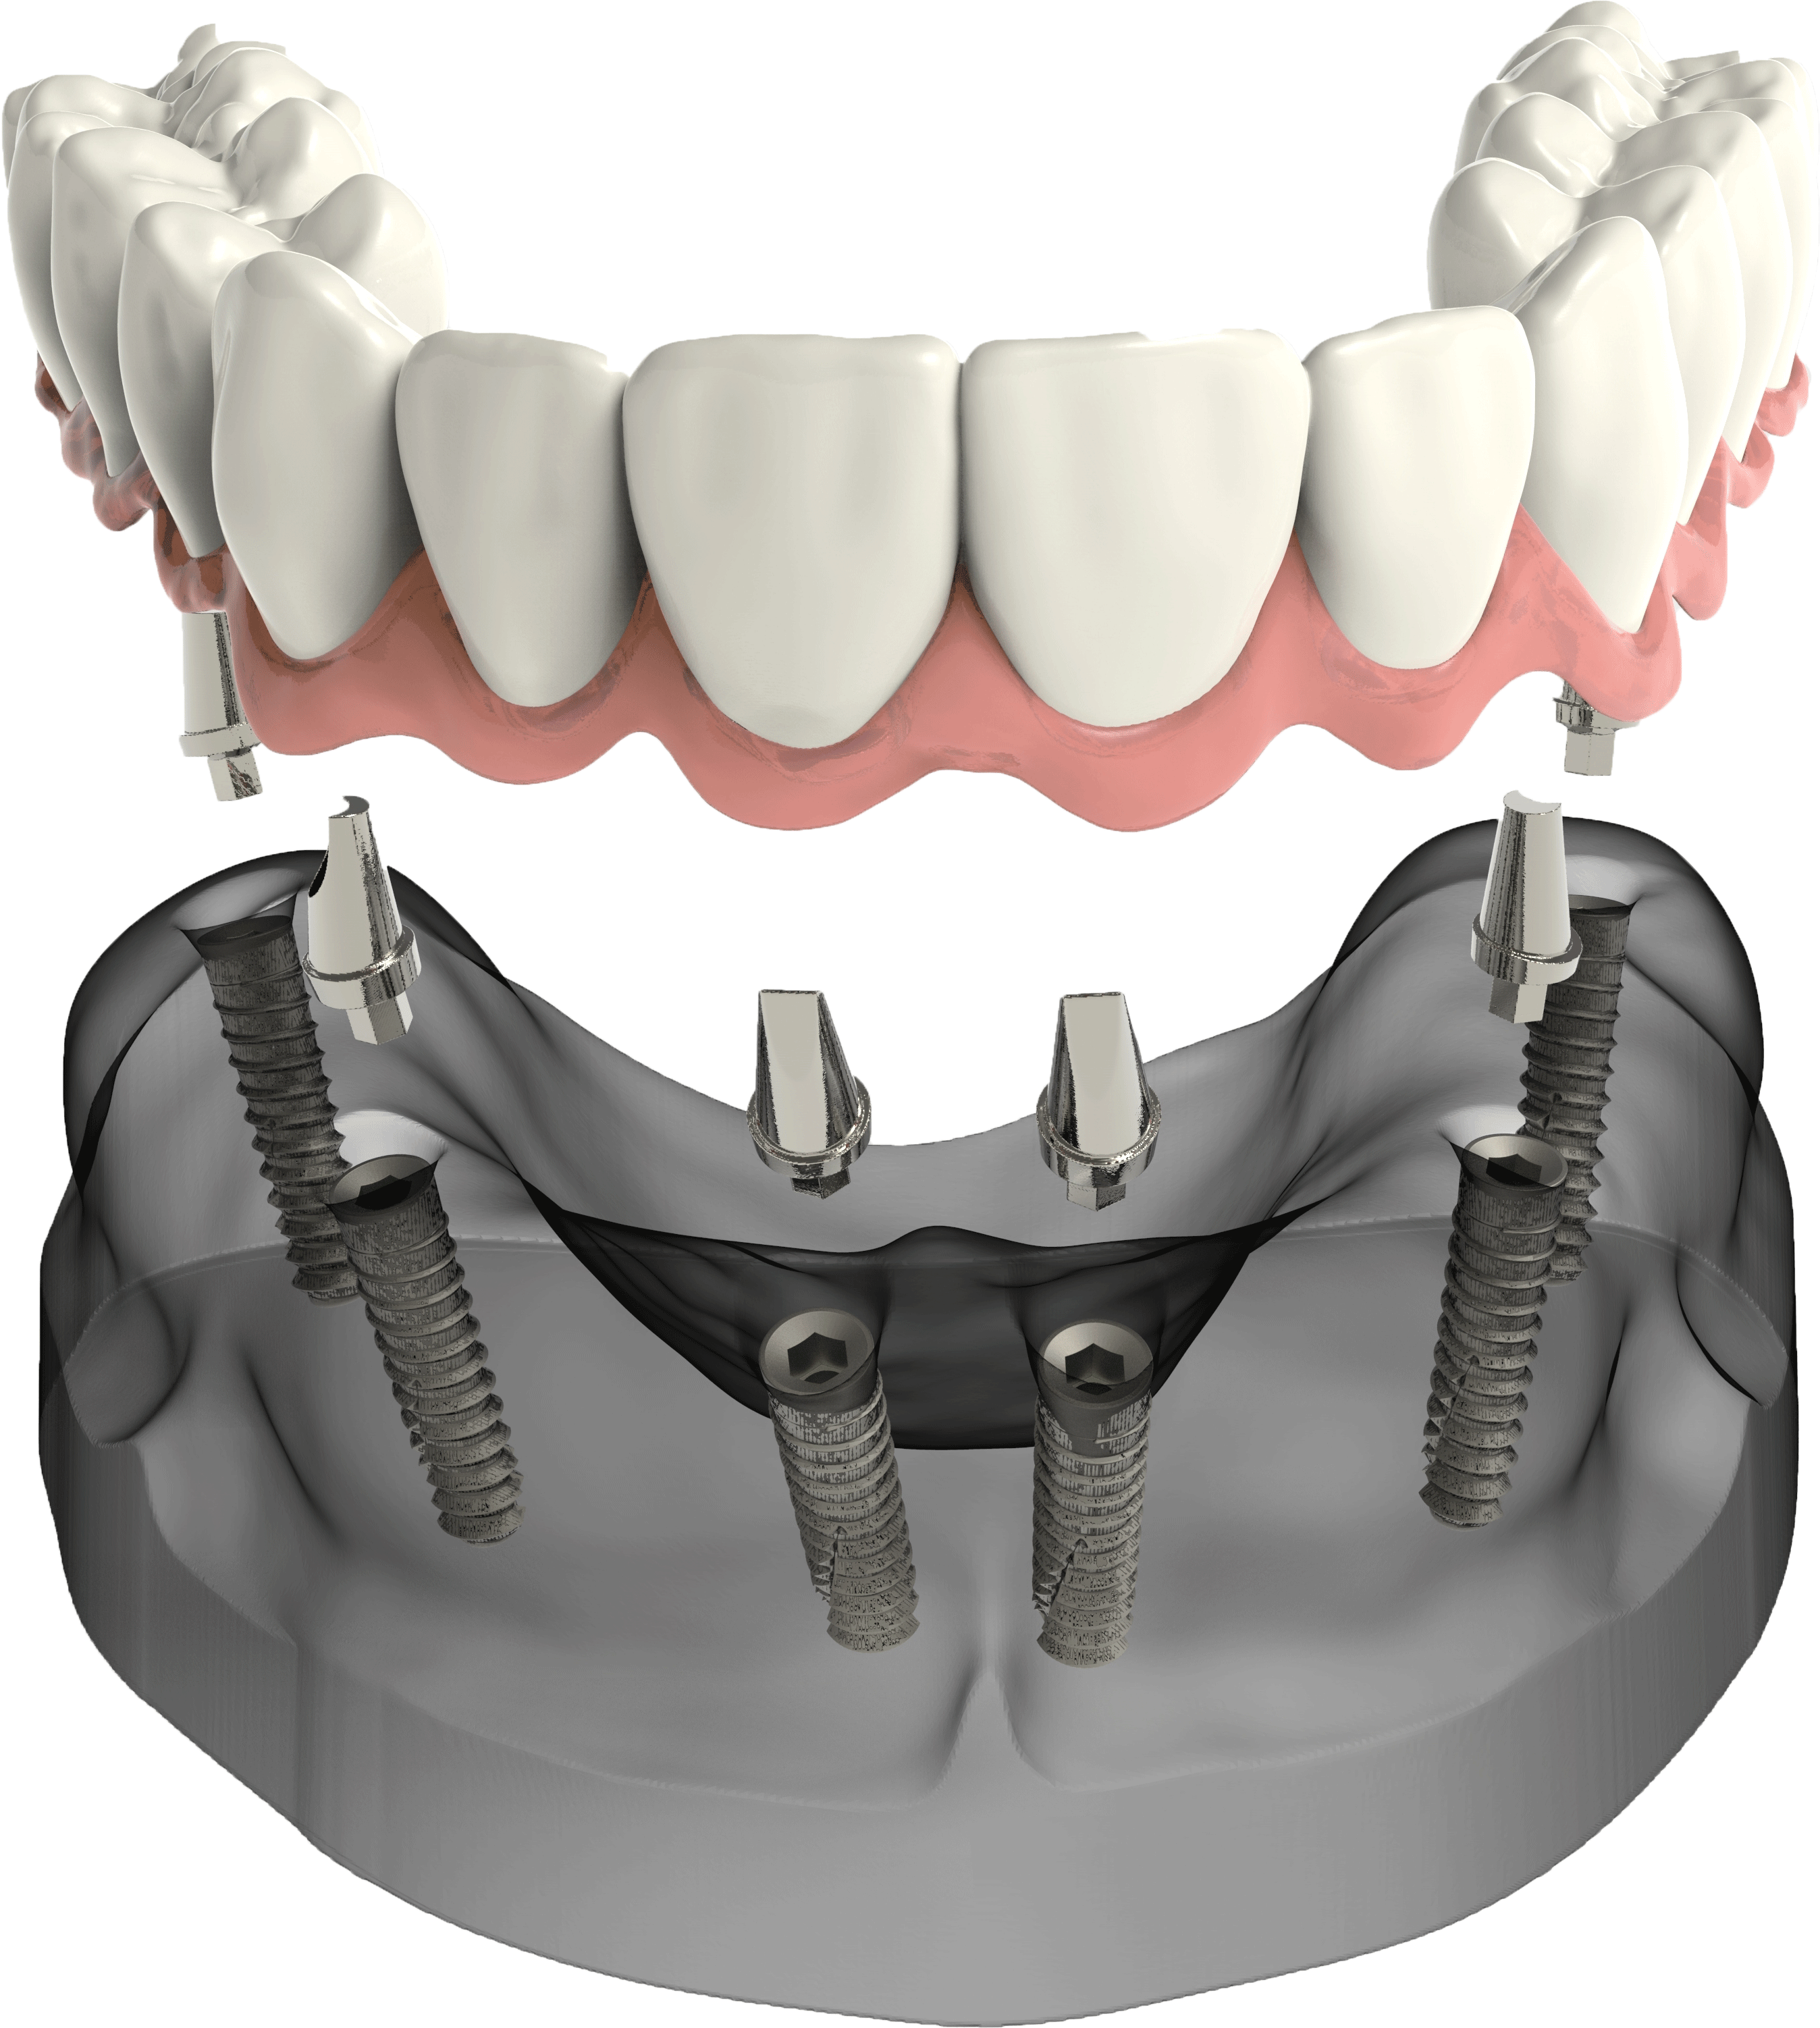 Имплантация зубов all on 4. Имплантологическая кассета Nobel полный набор для all on 4. Мостовидный протез на 6 имплантах.